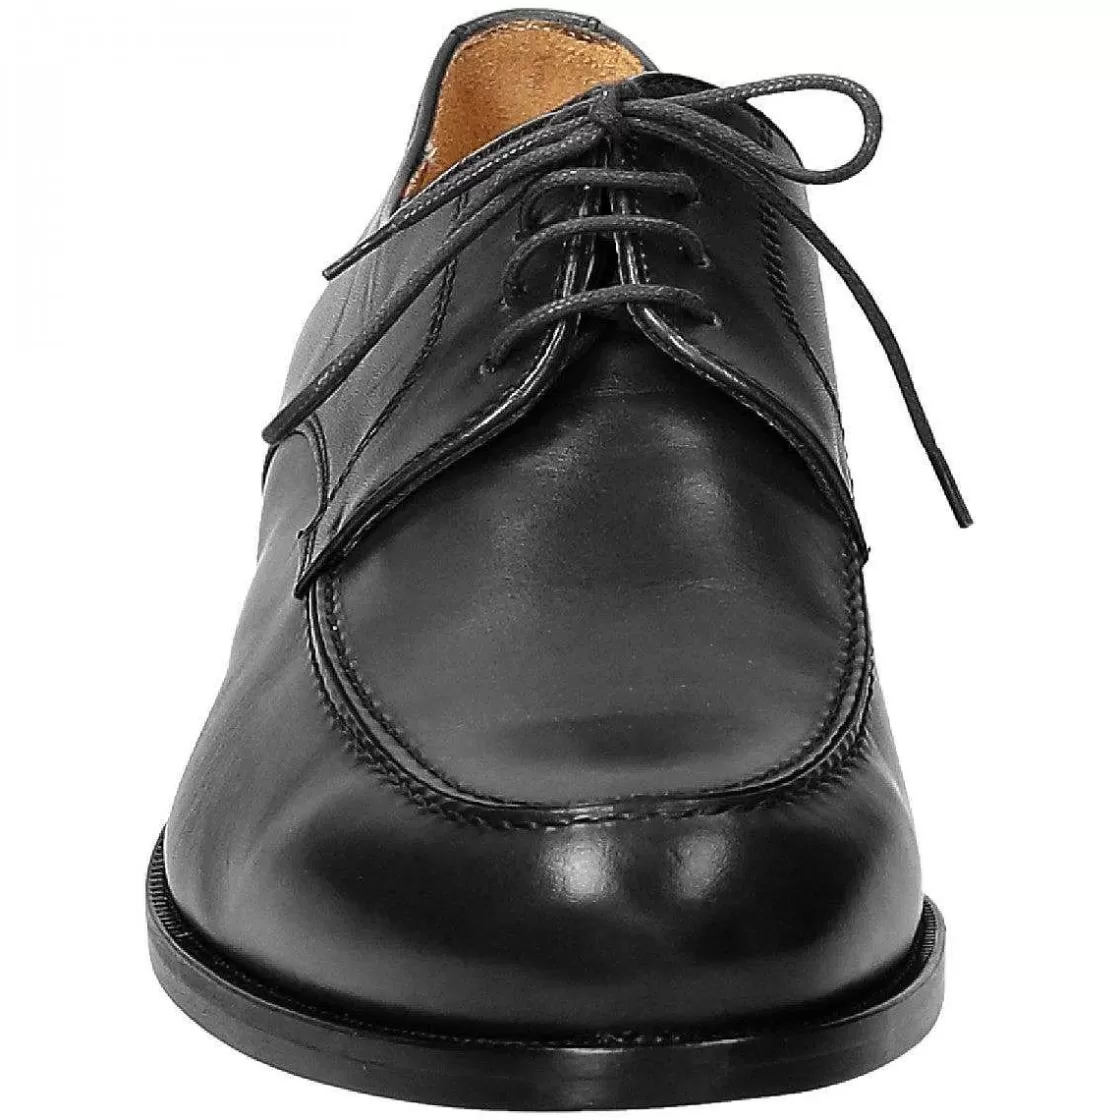 Leonardo Elegant Men'S Shoes In Black Leather Handmade Hot